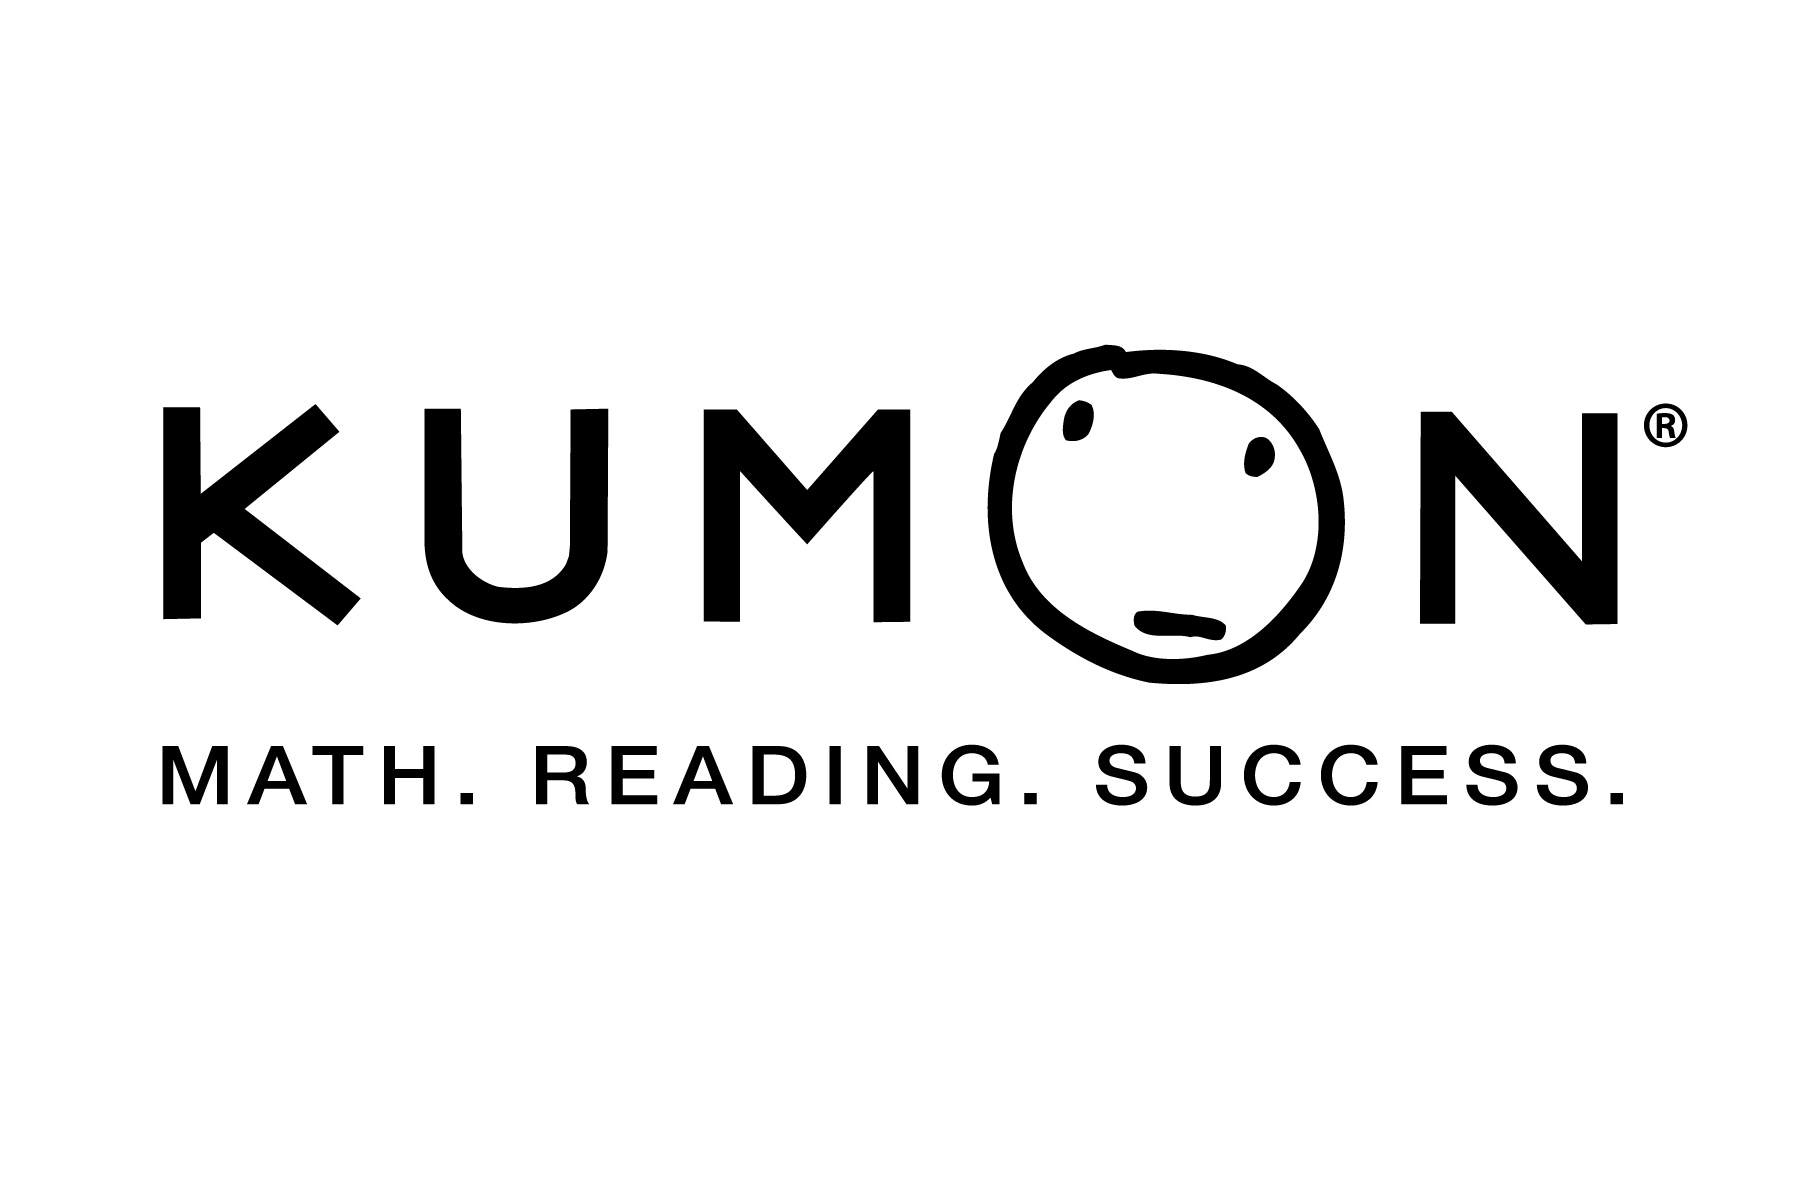 Kumon Math Reading